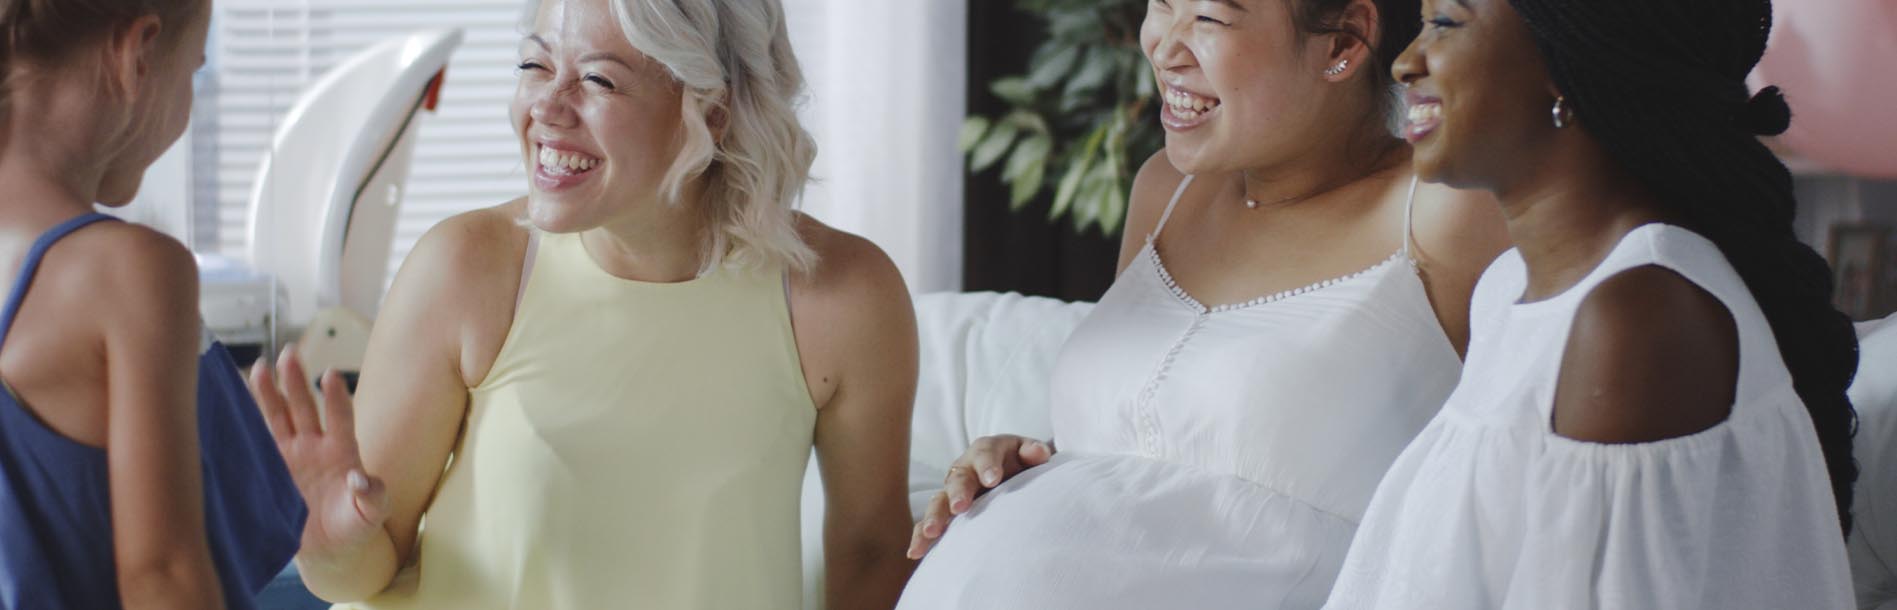 Maternidade real: como redes de apoio podem ajudar e preparar mães?